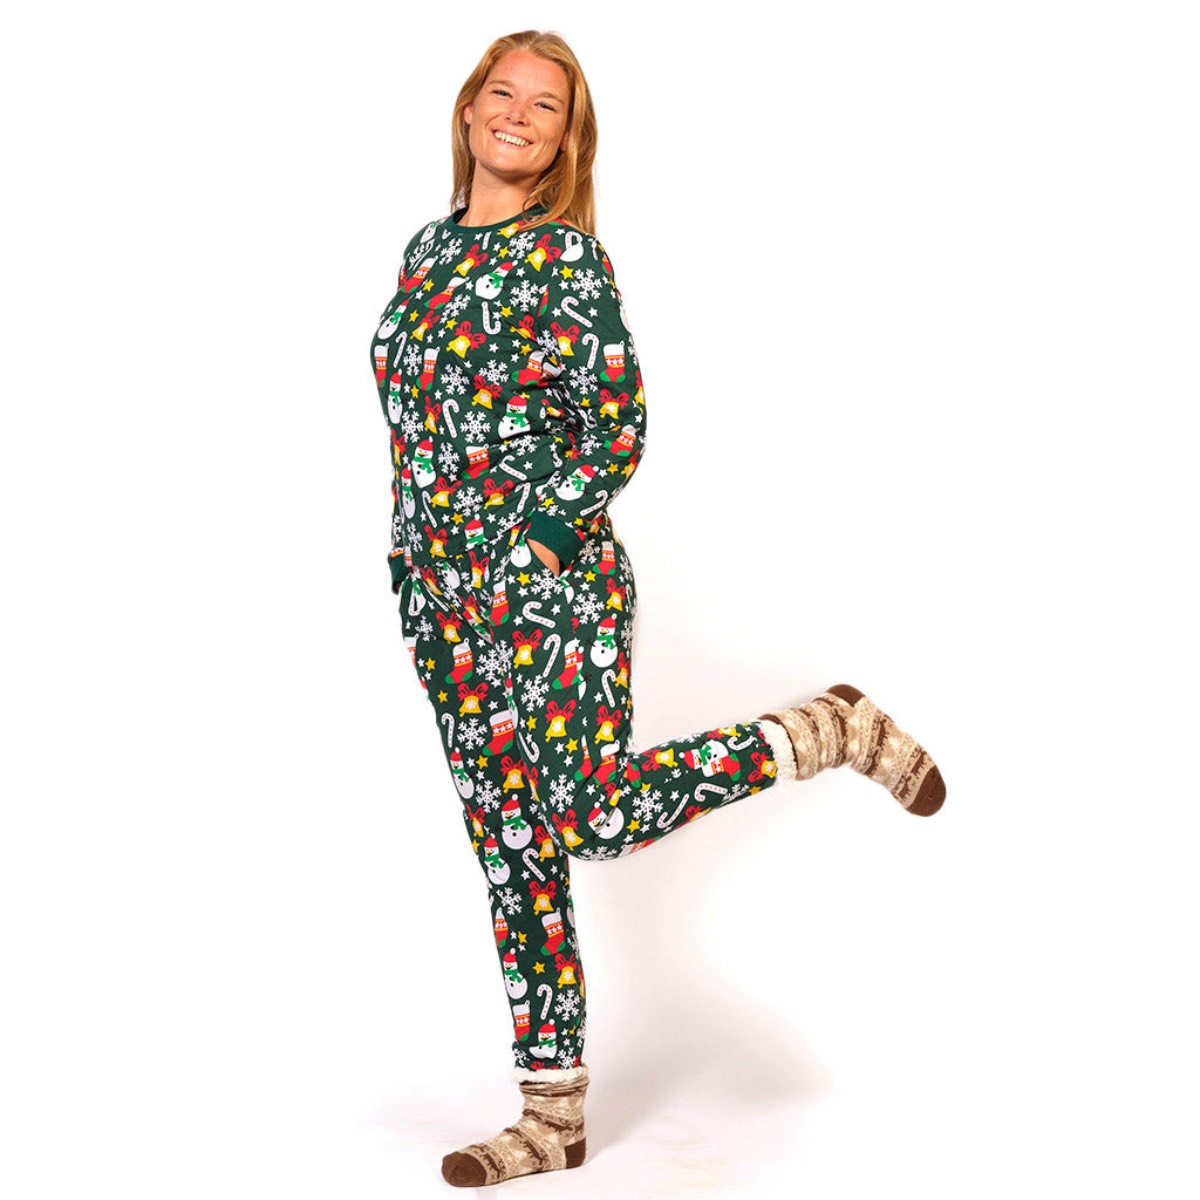 pijama-navidad-adultos-unisex-verde-motivos-navidenos-mujer-1728x